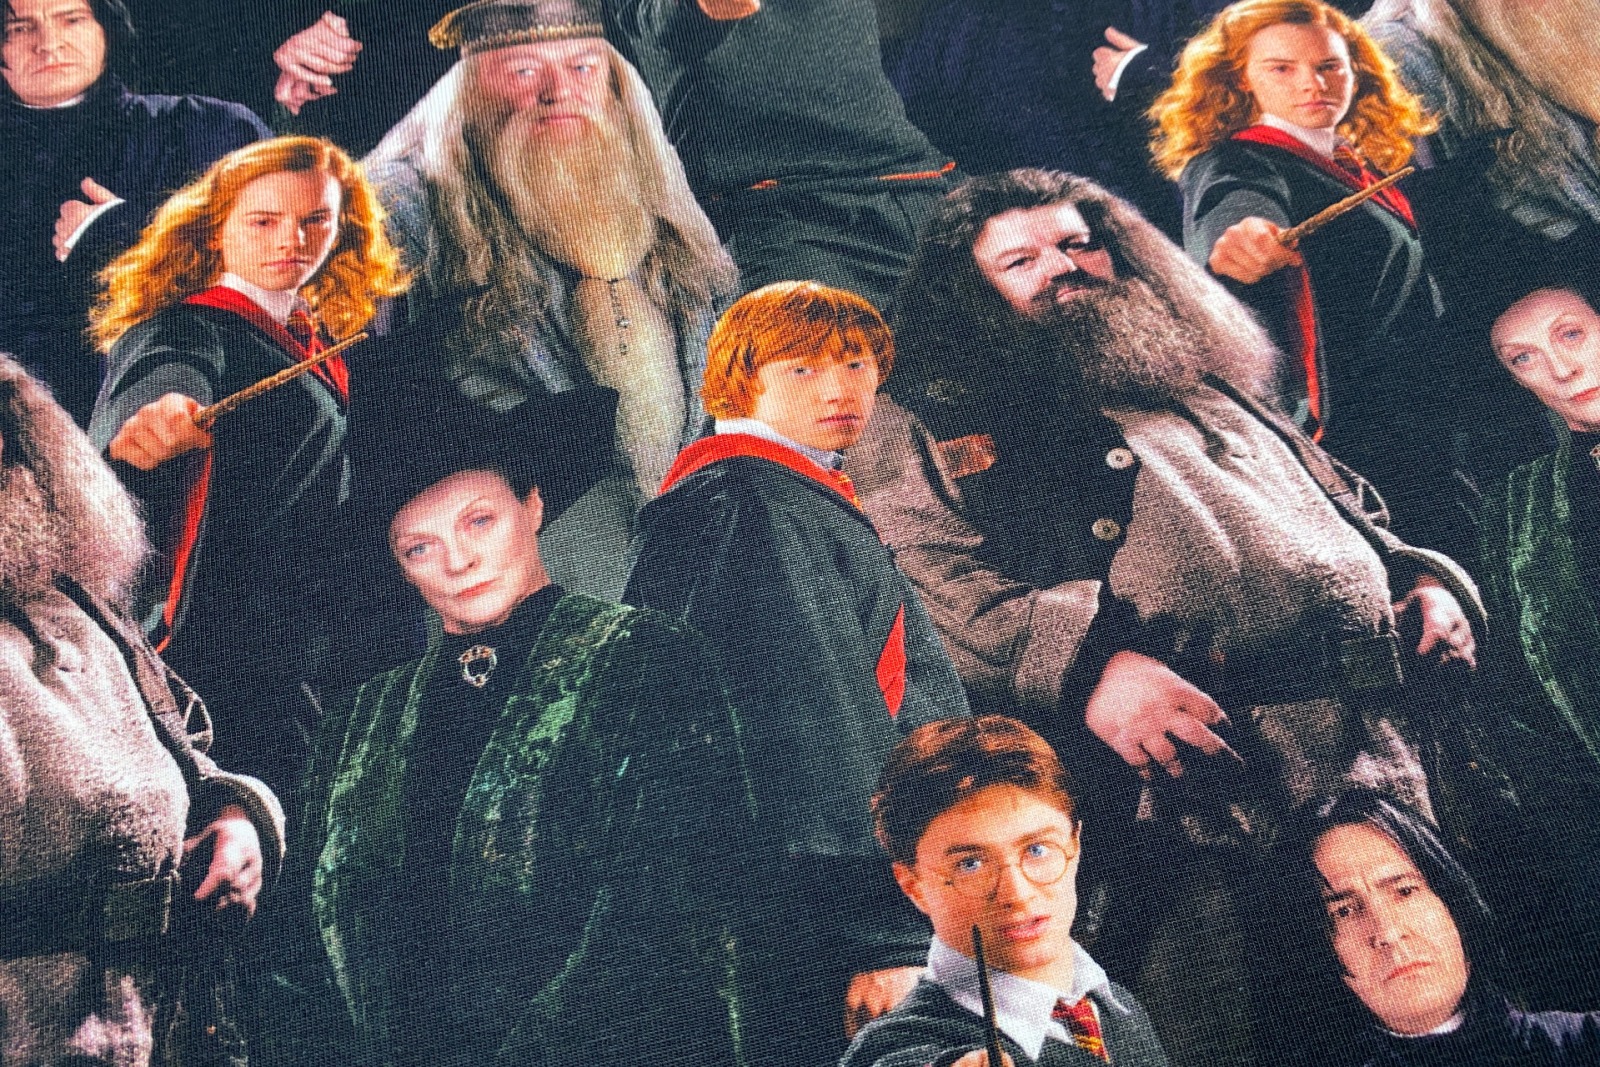 Harry Potter Jersey - 19,80 EUR/m - Hermine - Ron - Dumbledore - Hagrid - Snape - McGonagal - Lizenz